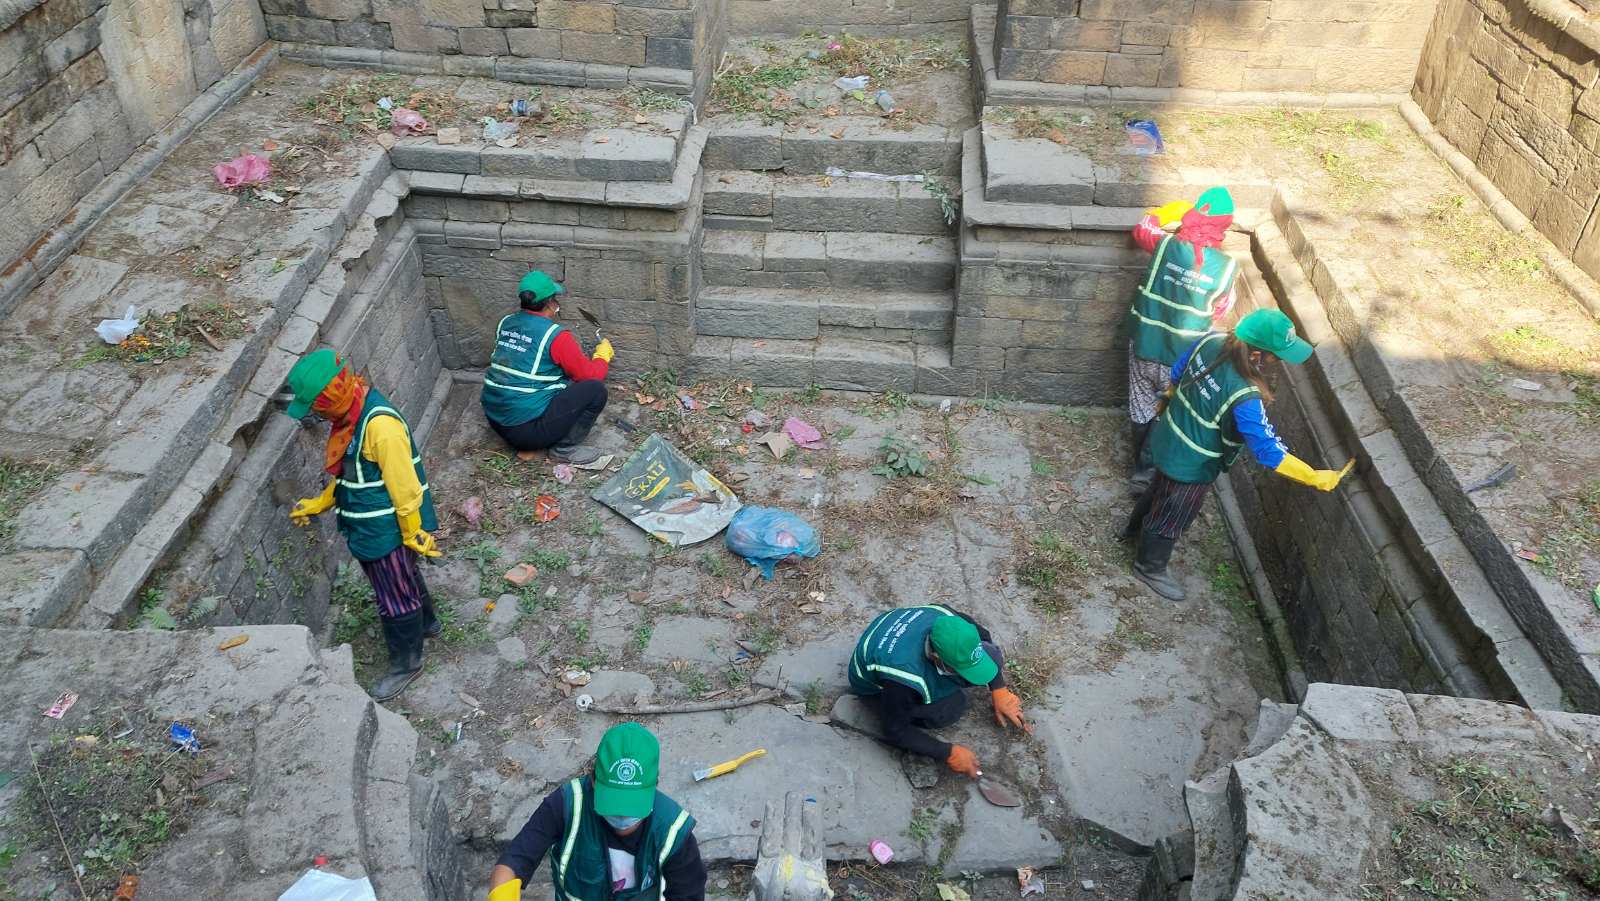 Take measures to preserve precious stone taps in Kathmandu